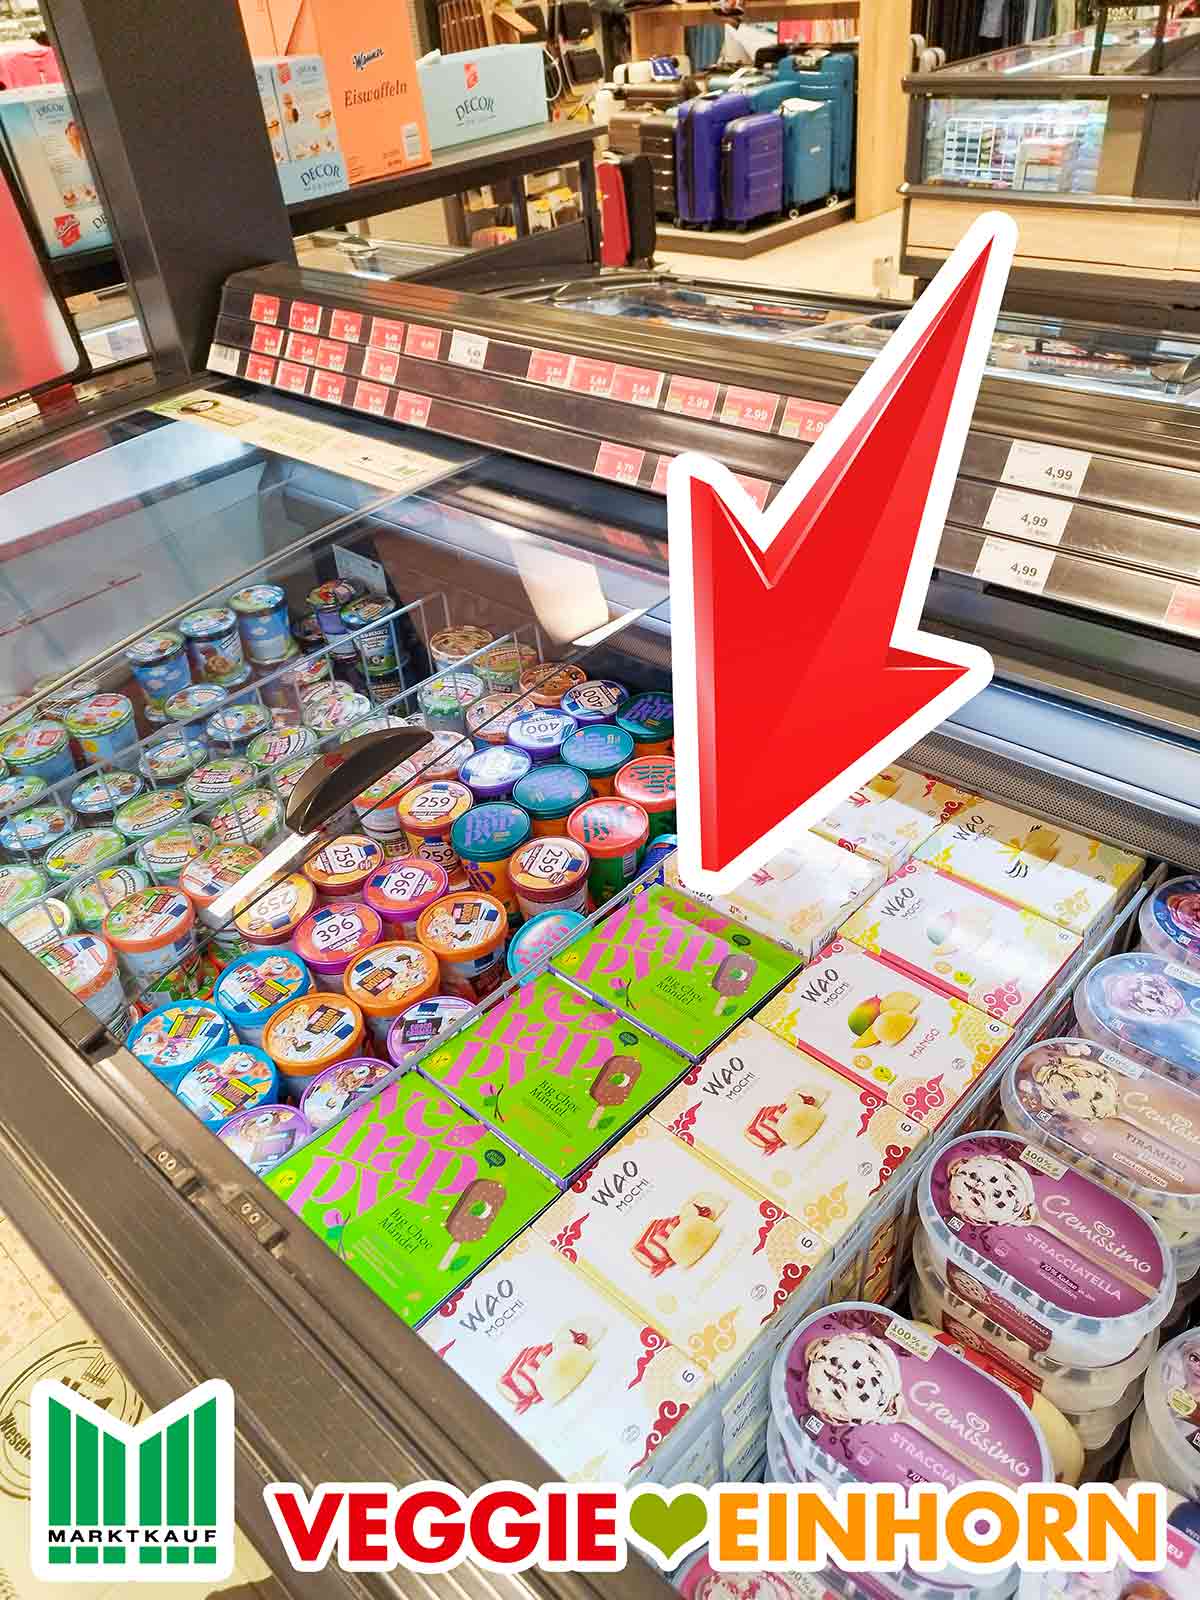 Tiefkühltruhe im Supermarkt mit vehappy Big Choc Mandel Eis